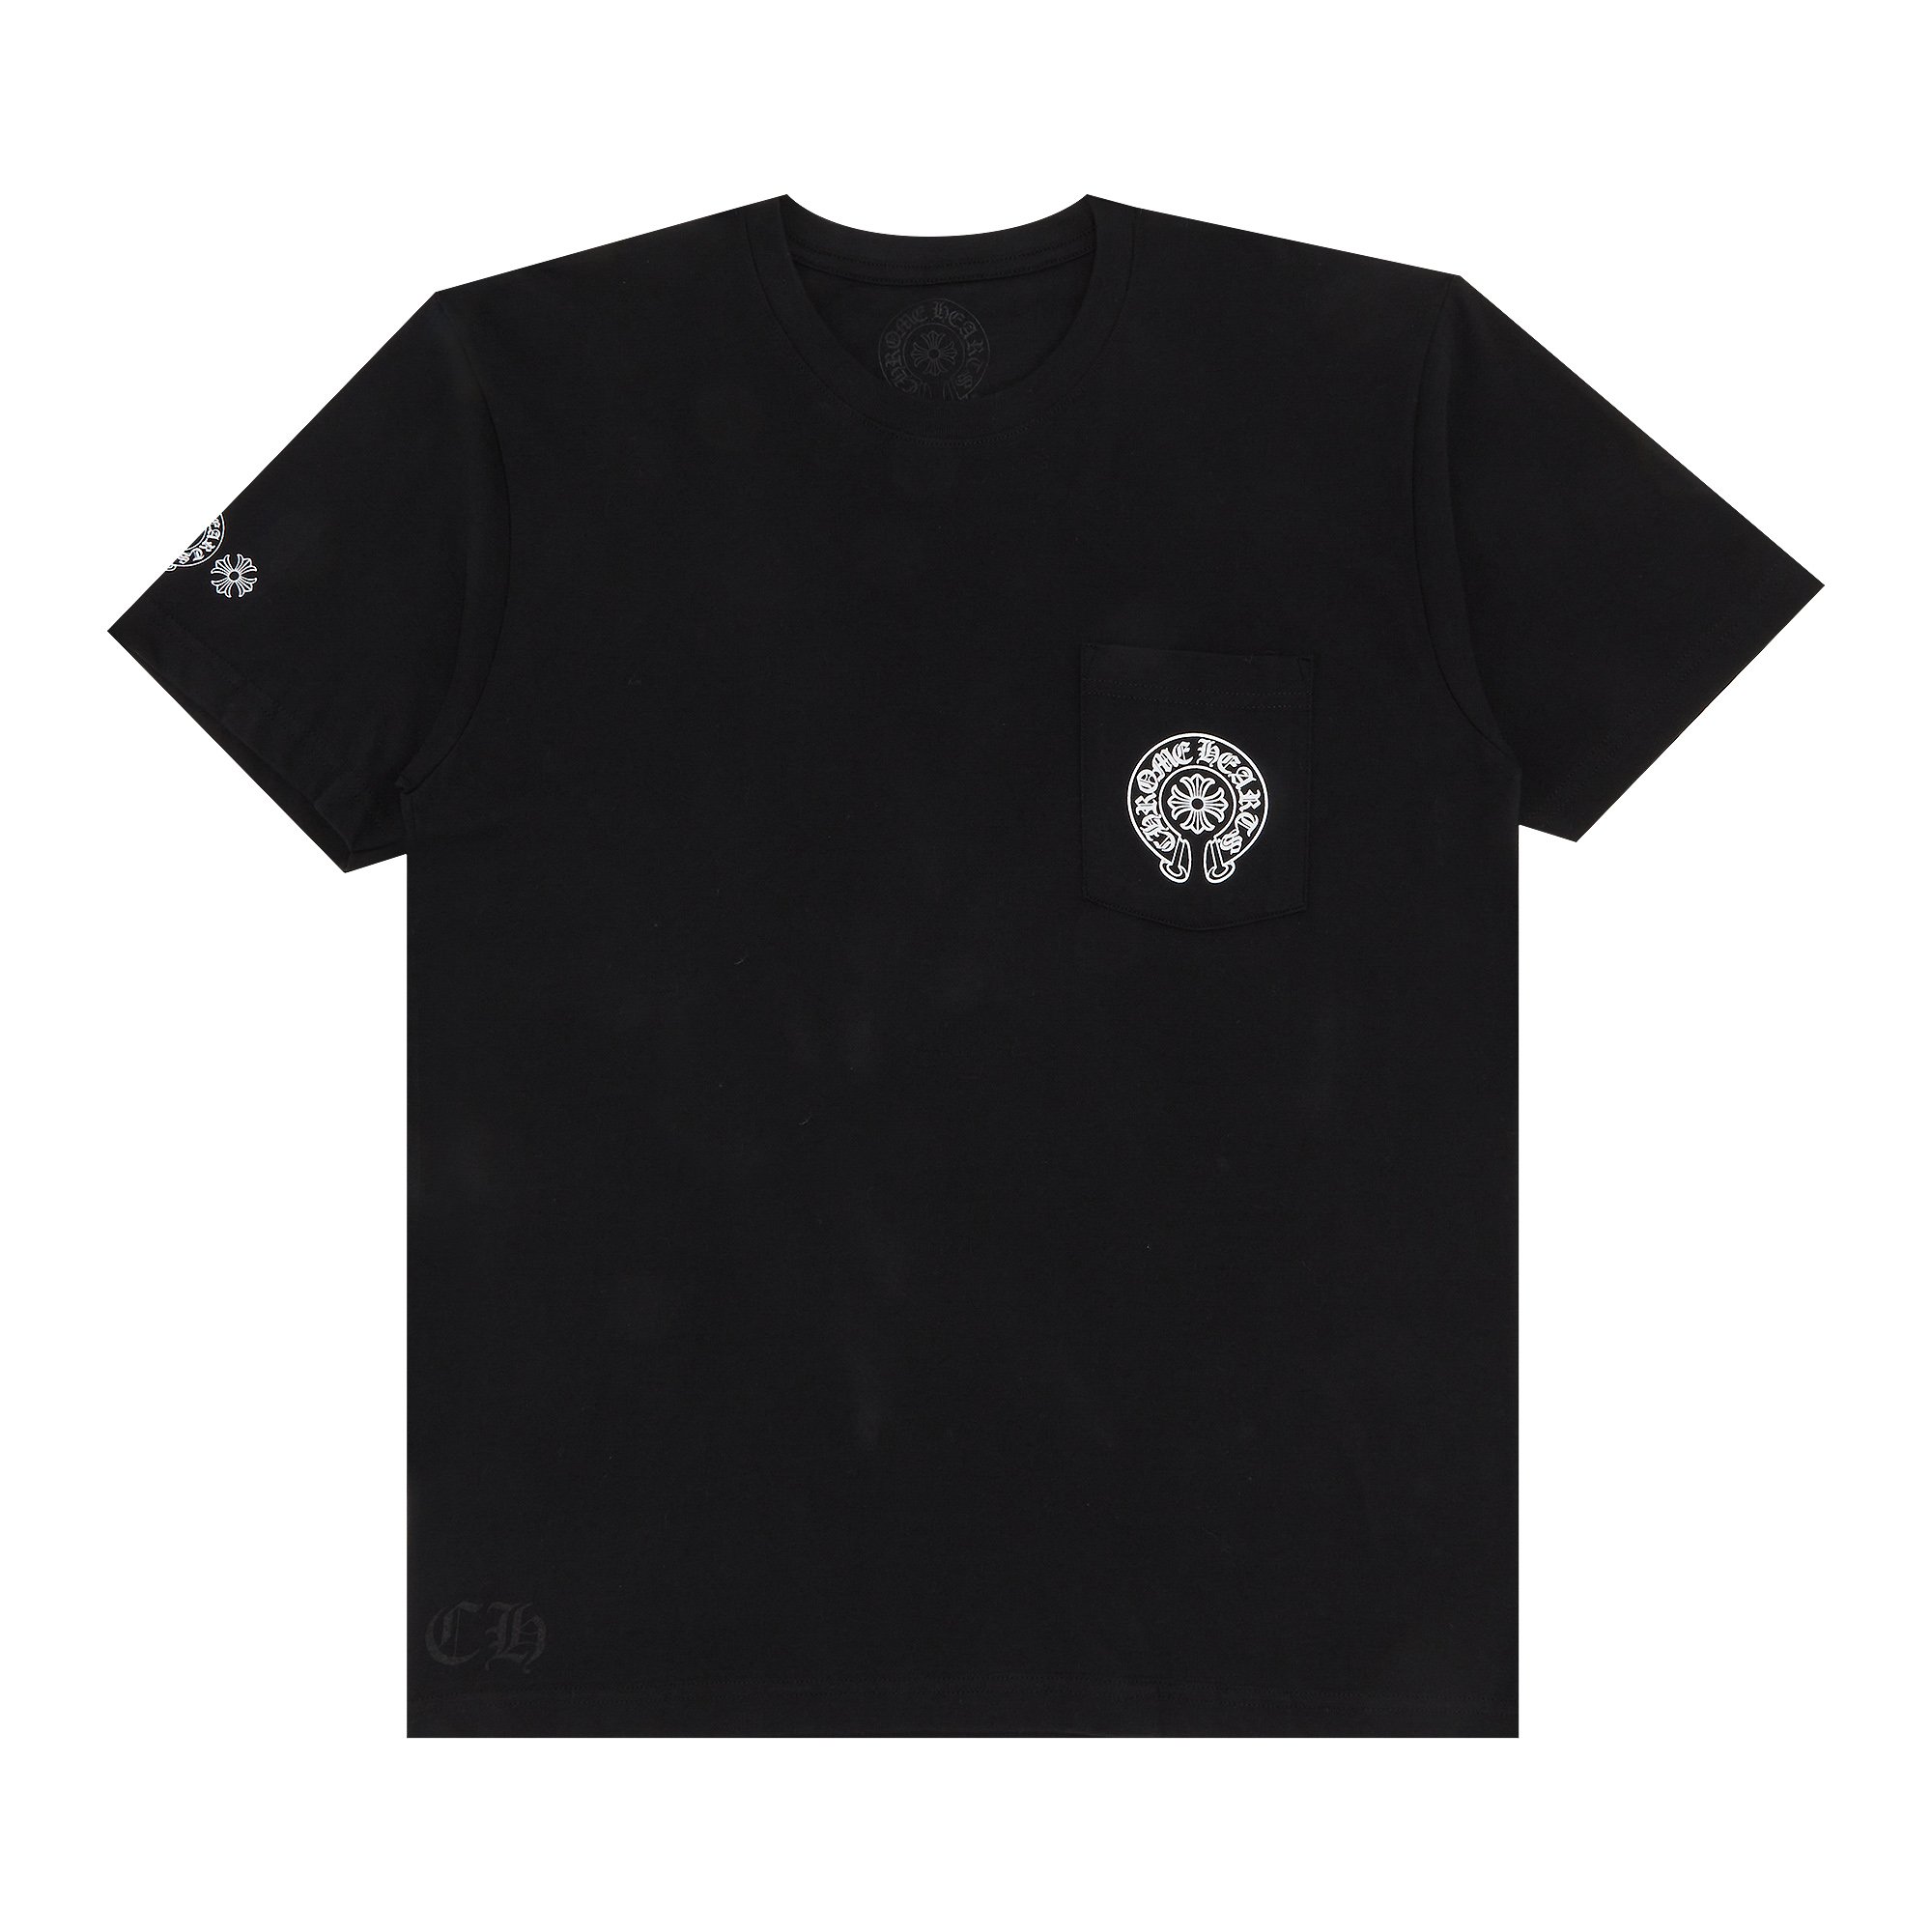 Футболка с логотипом Chrome Hearts Gradient, цвет Черный/Многоцветный футболка с карманами и логотипом chrome hearts horseshoe цвет черный